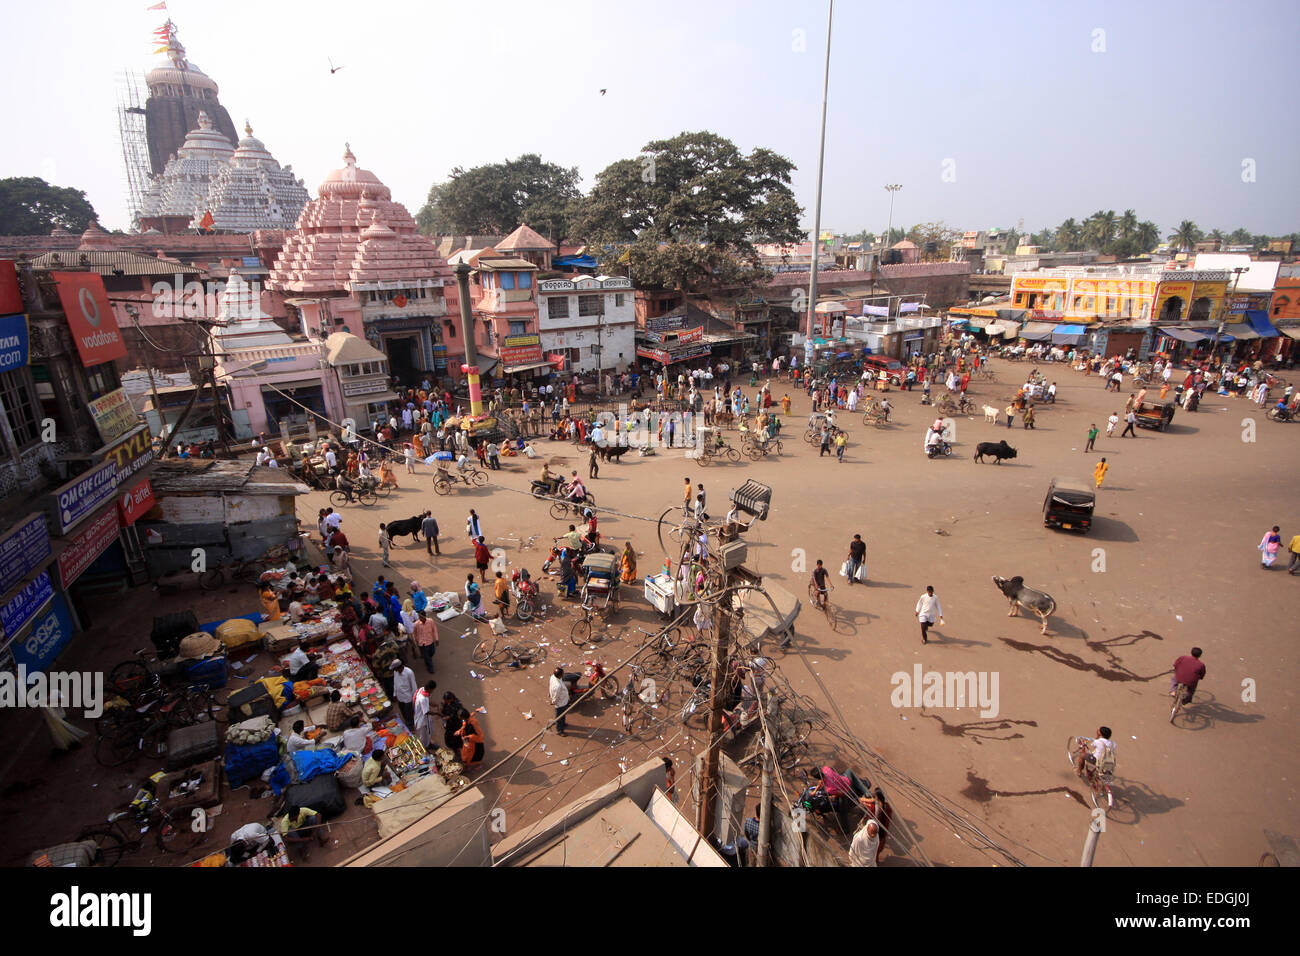 Jagannath Temple, Puri, India Stock Photo